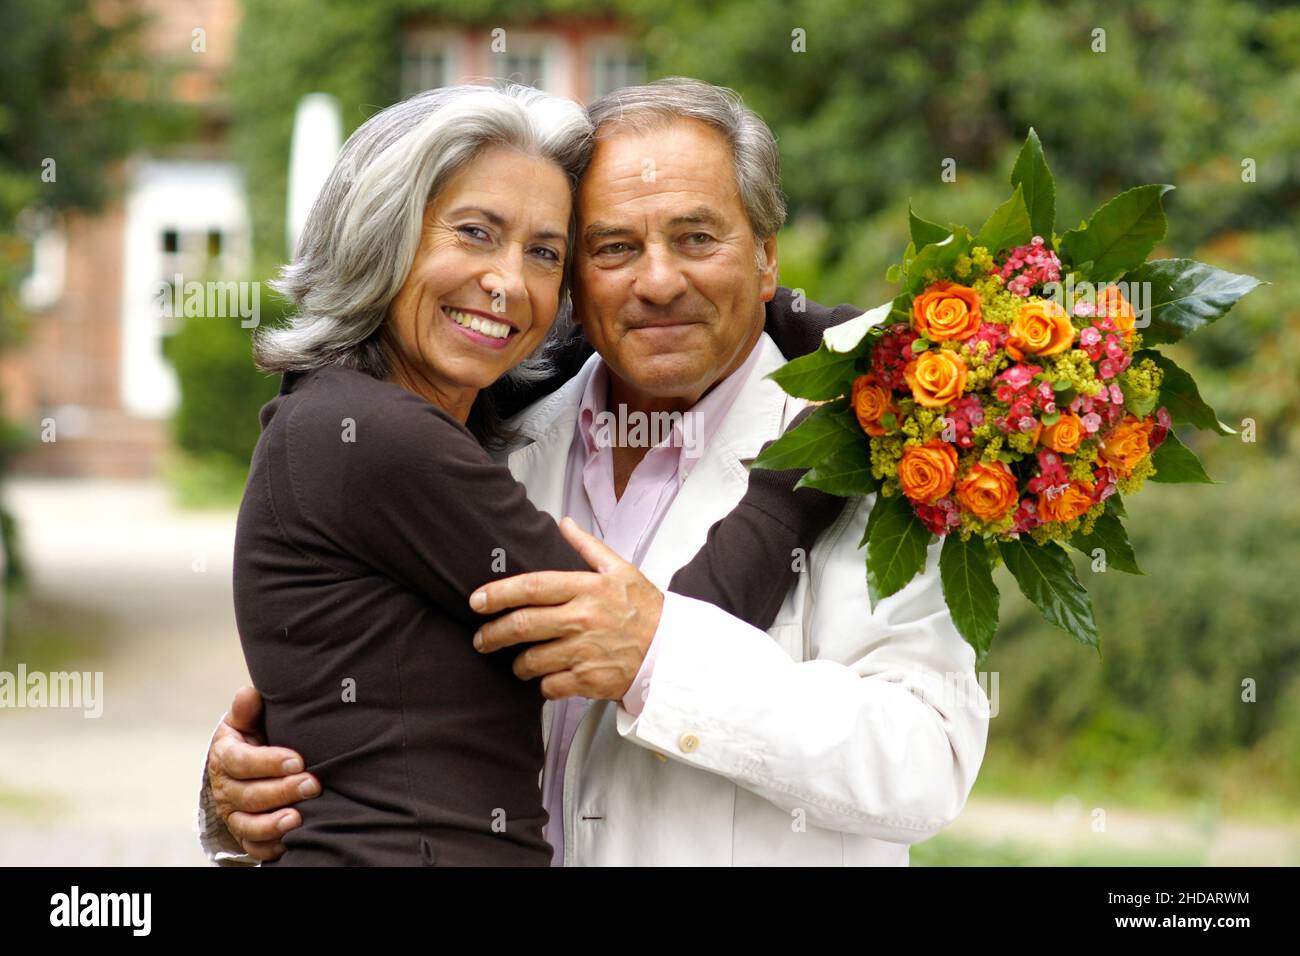 Ein aäteres Paar im Park - die Frau sitzt im Rollstuhl, der Mann umarmt sie liebevoll und ueberreicht ein Geschenk und Blumen, Model-Release| Vecchio colpo di Stato Foto Stock